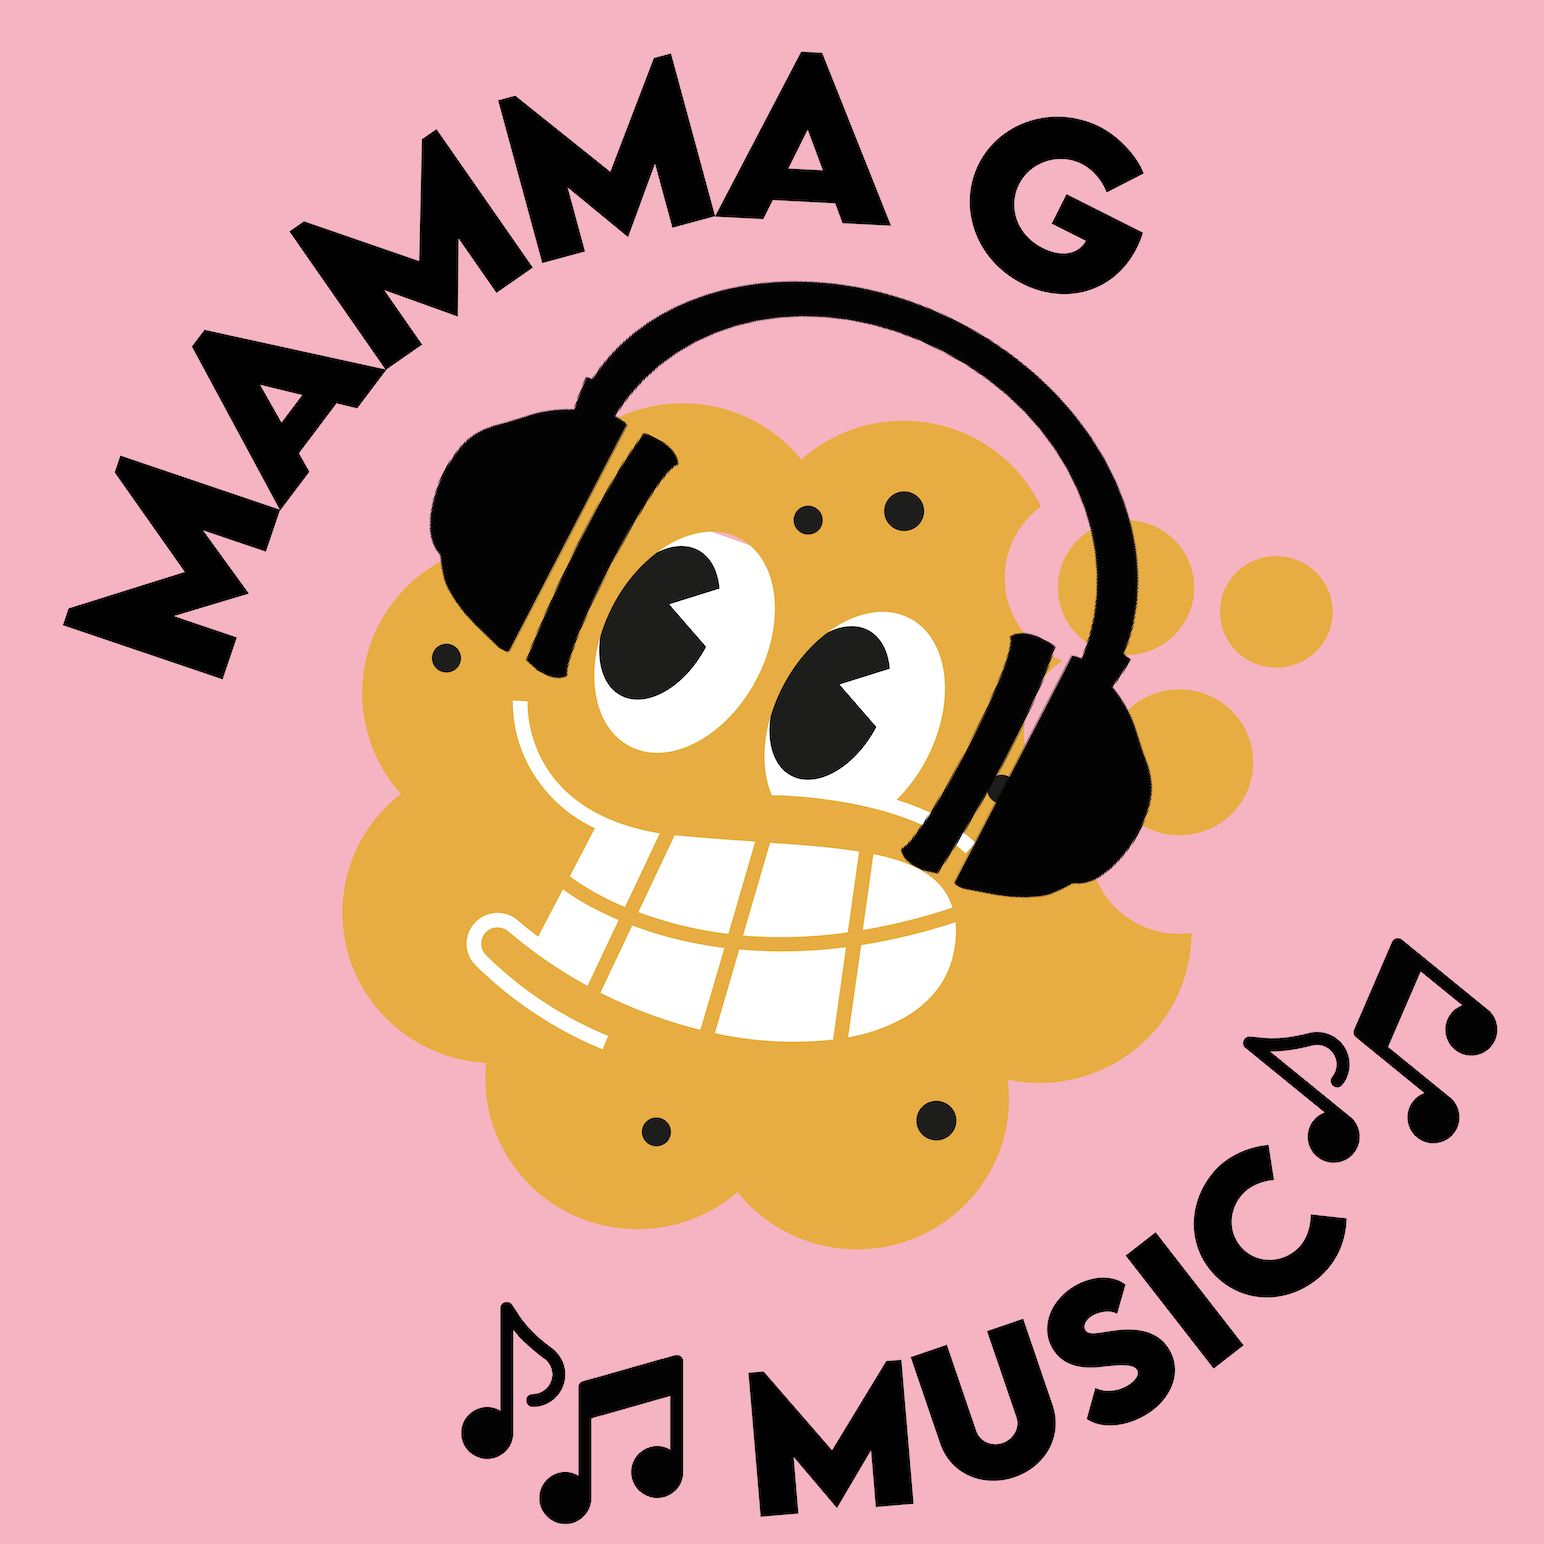 Mamma G Music #2